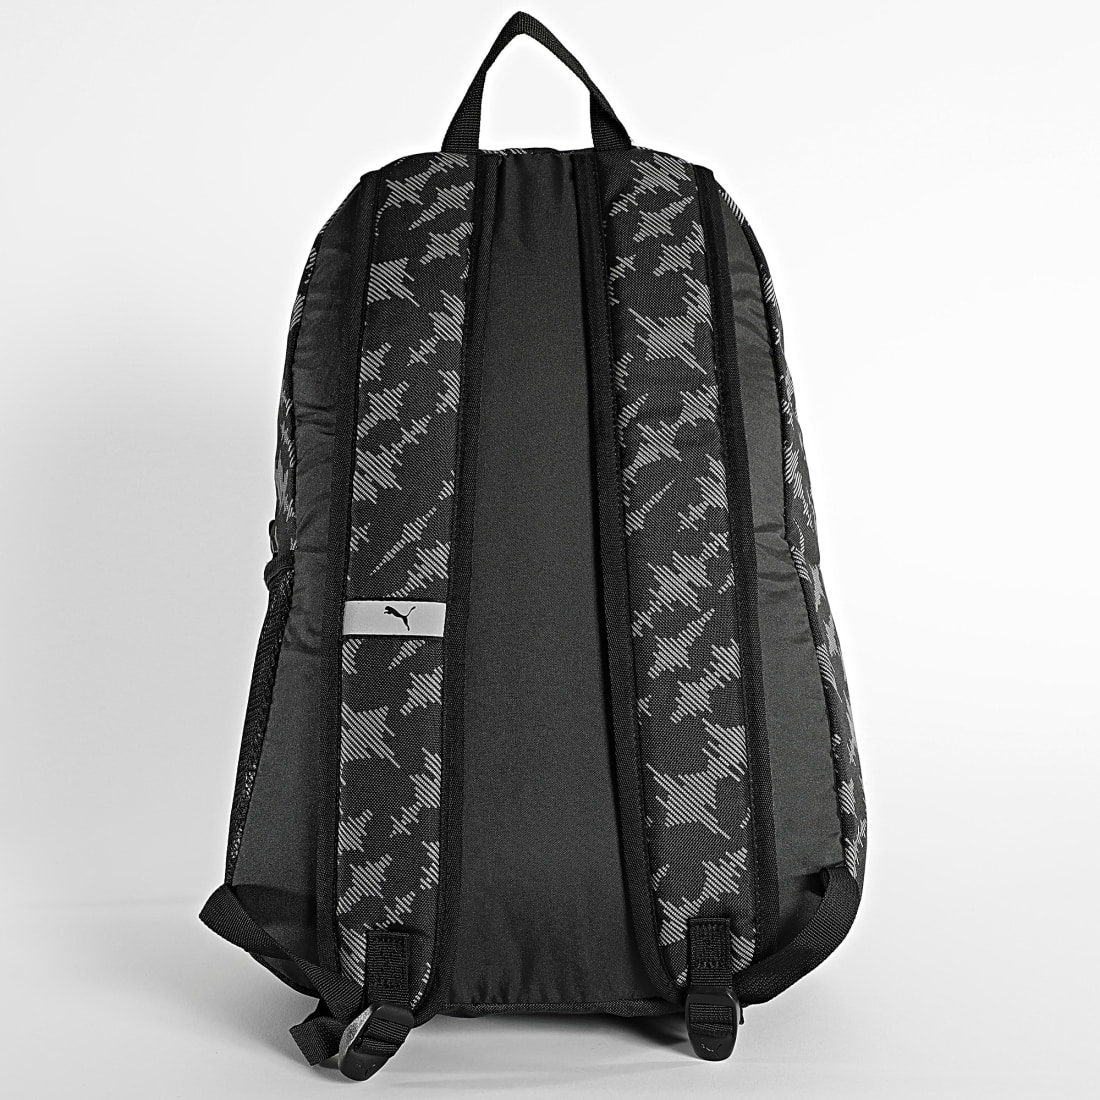 Puma Sac à dos - Phase Backpack (Noir) - Sacs à dos chez Sarenza (336399)